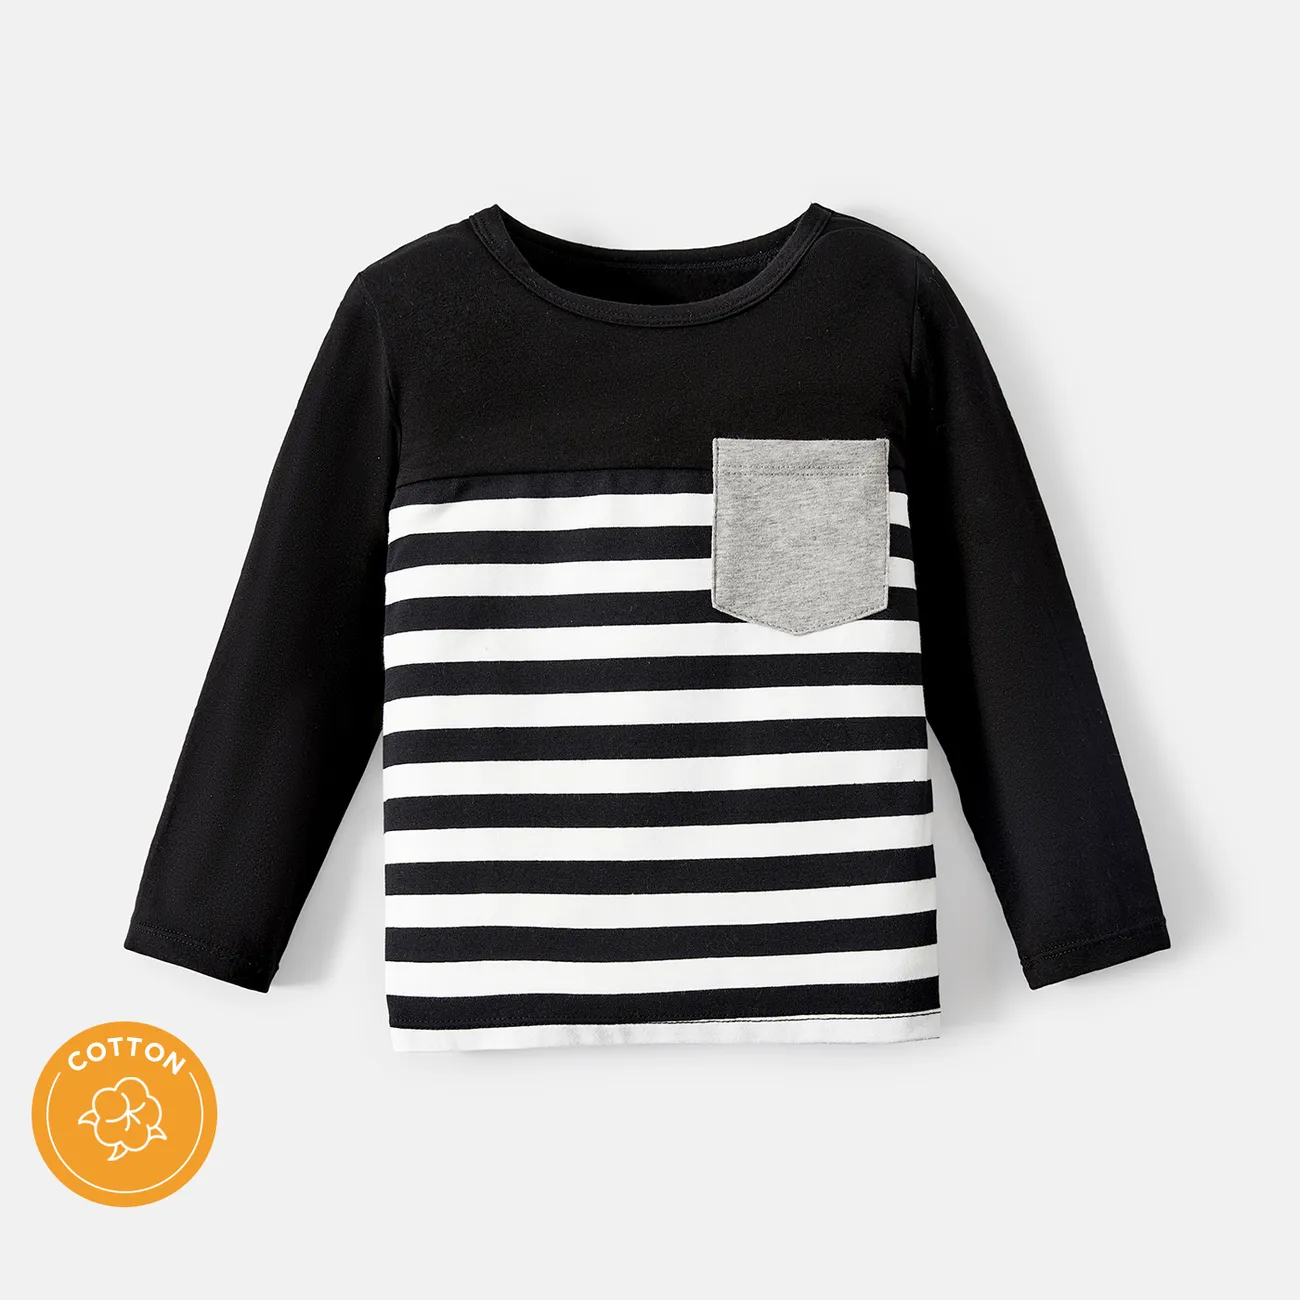 Camiseta de manga larga de algodón con diseño de bolsillo a rayas para niños pequeños/niños bloque de color big image 1